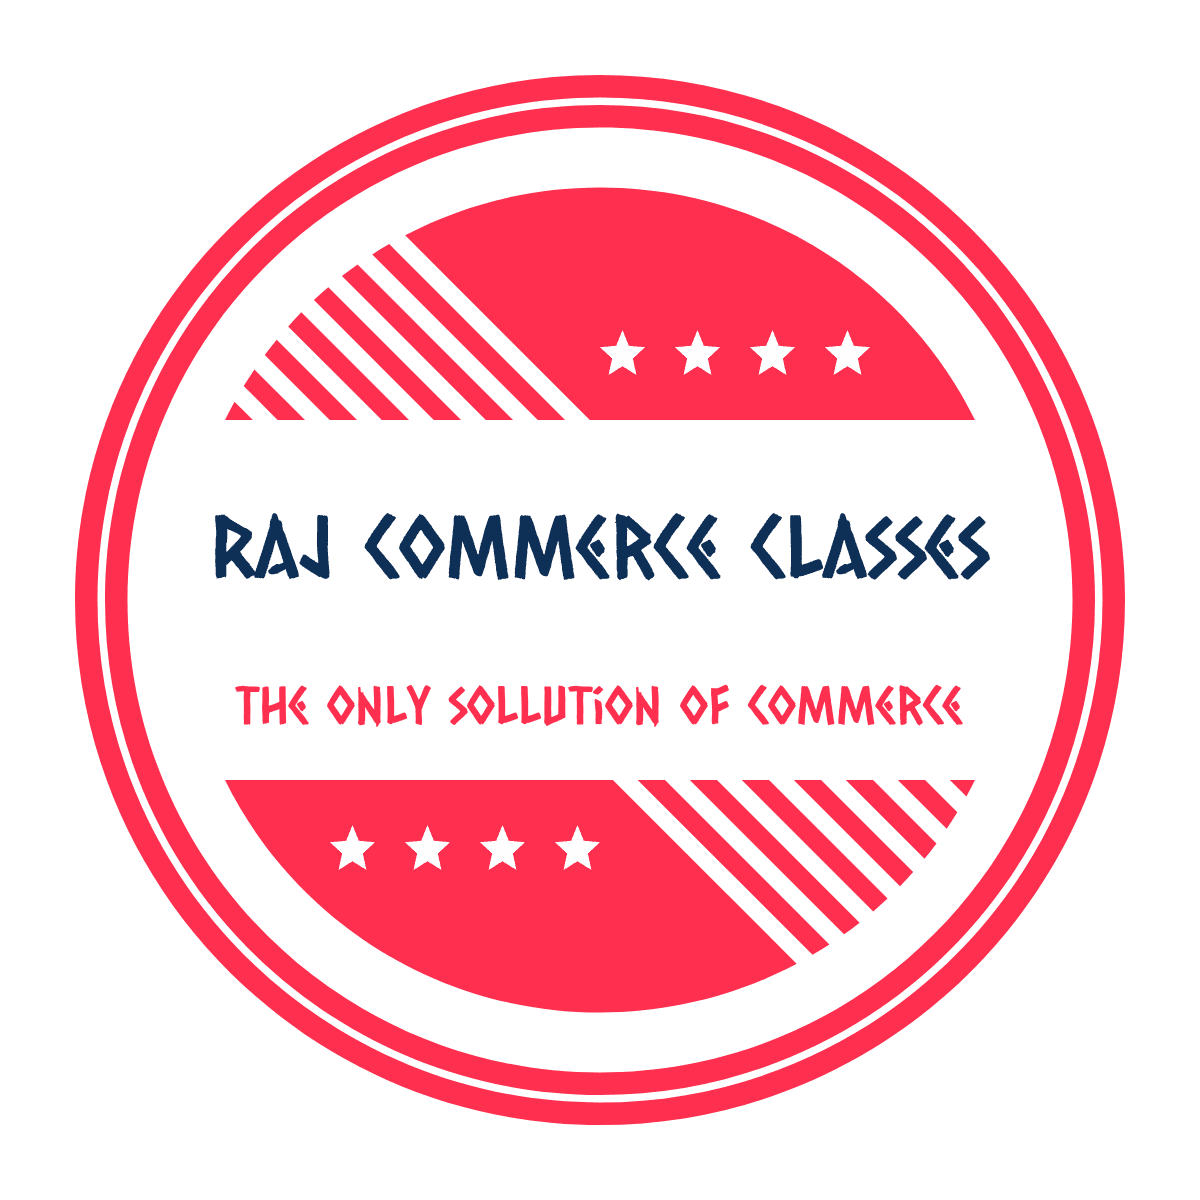 RAJ Commerce Classes